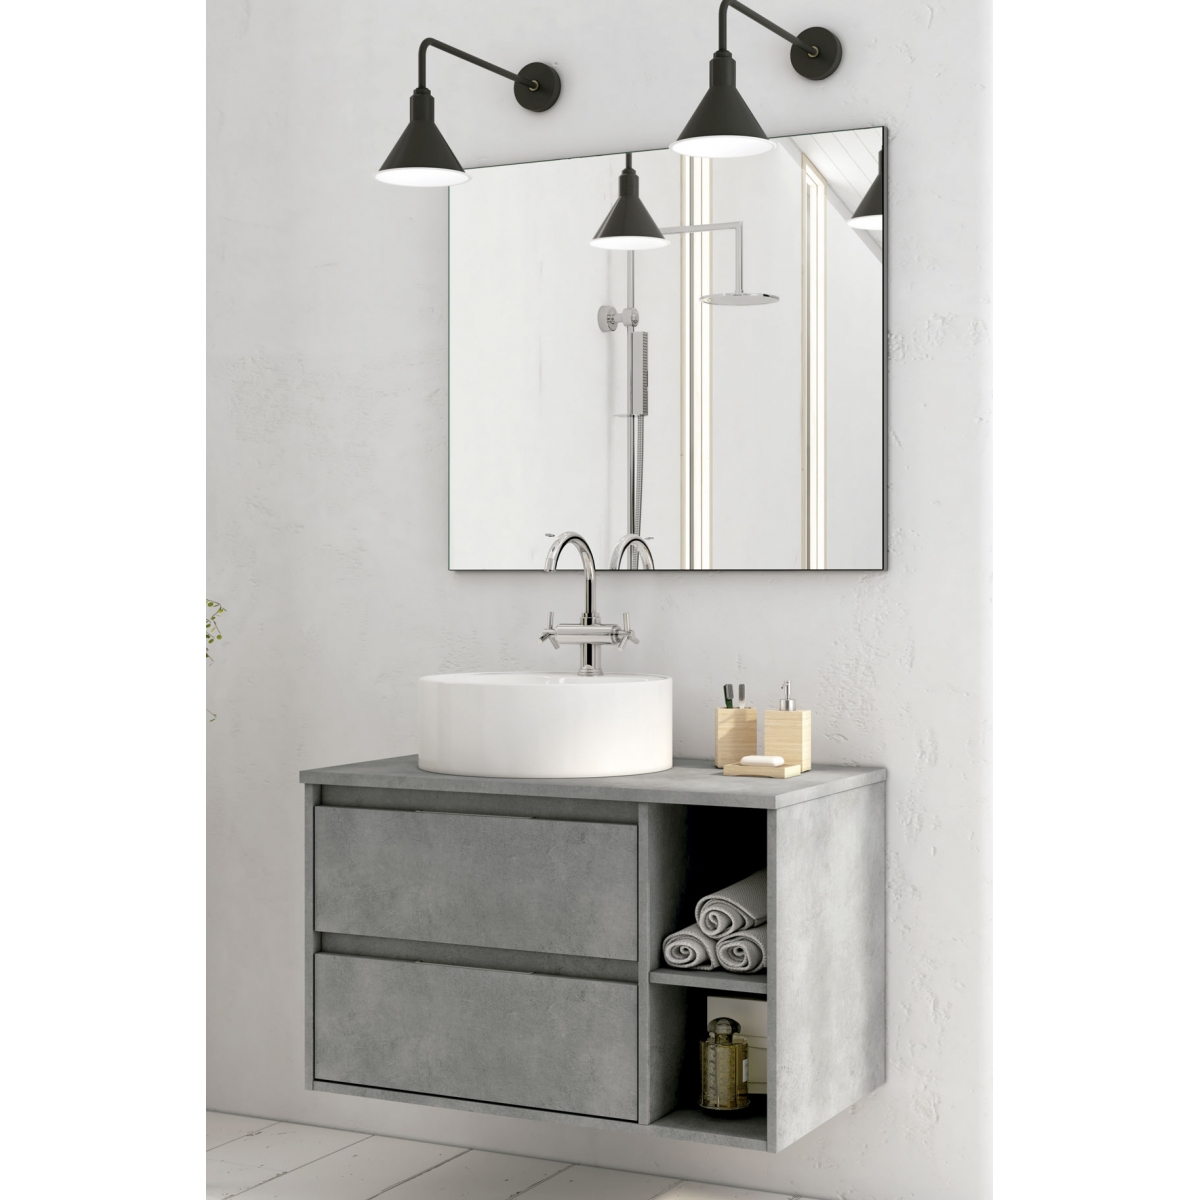 NELLIO - Mueble de baño de pared - Mueble de baño suspendido - Dimensiones  64x30x90 cm - Almacenamiento de baño